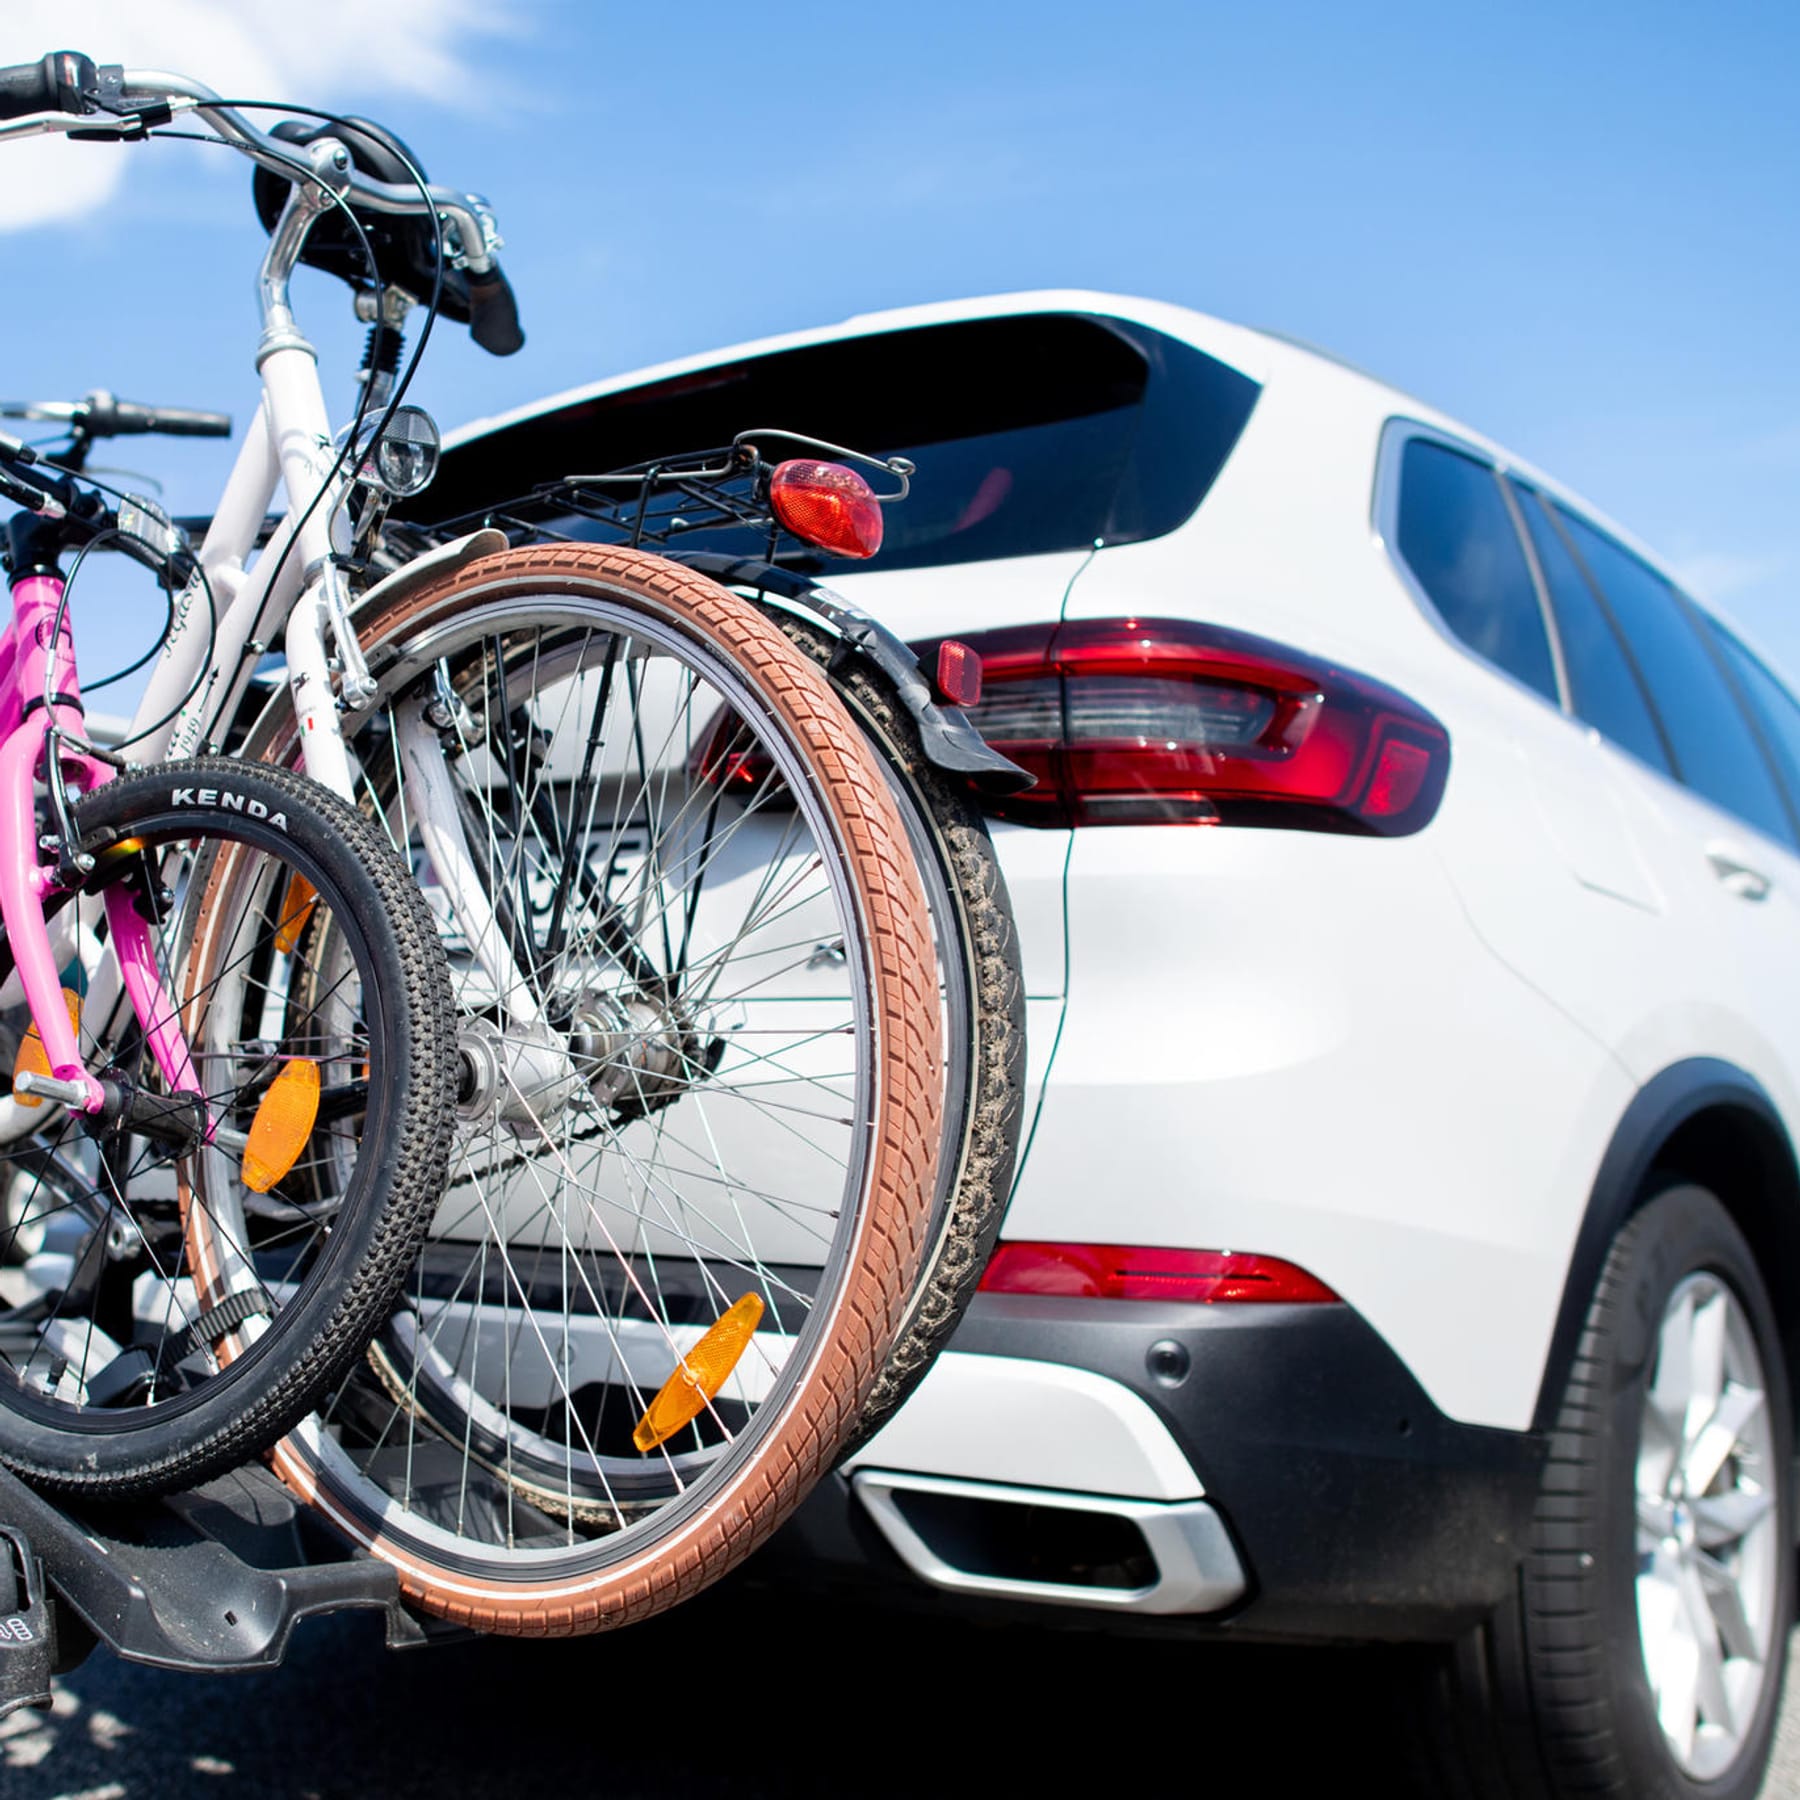 Fahrradträger am Auto: Kennzeichen, Last, Breite, Co. – diese Regeln gelten